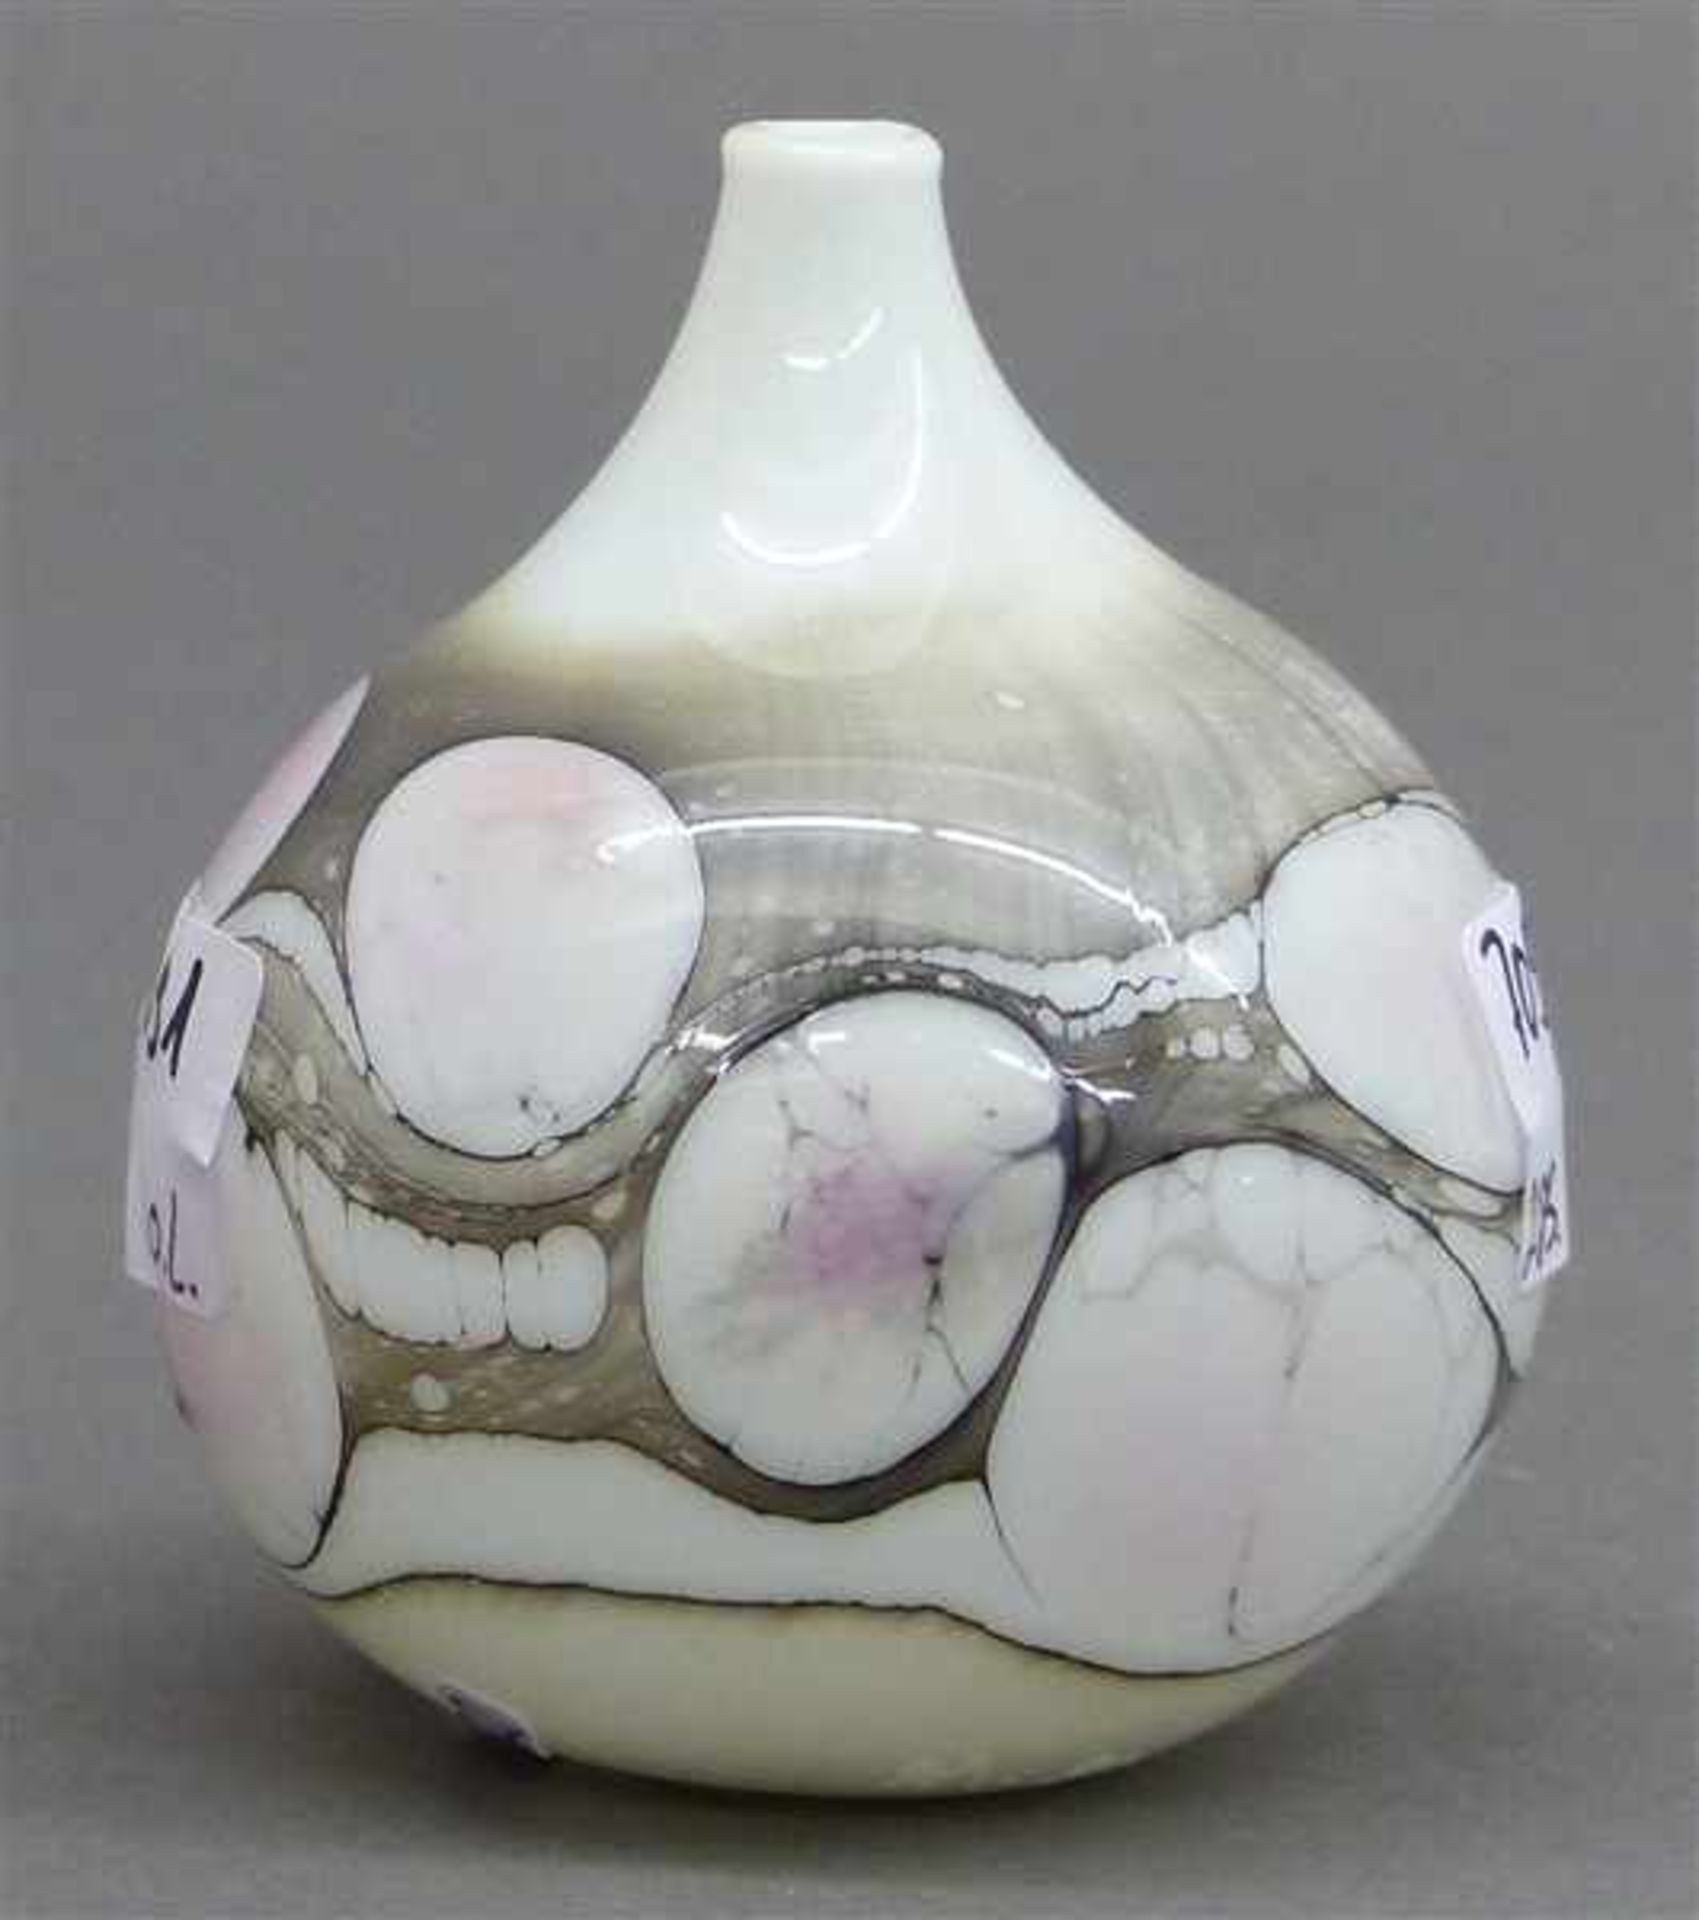 Milchglasvasebauchige Form, mundgeblasen, bemalt, 20. Jh., h 8 cm,